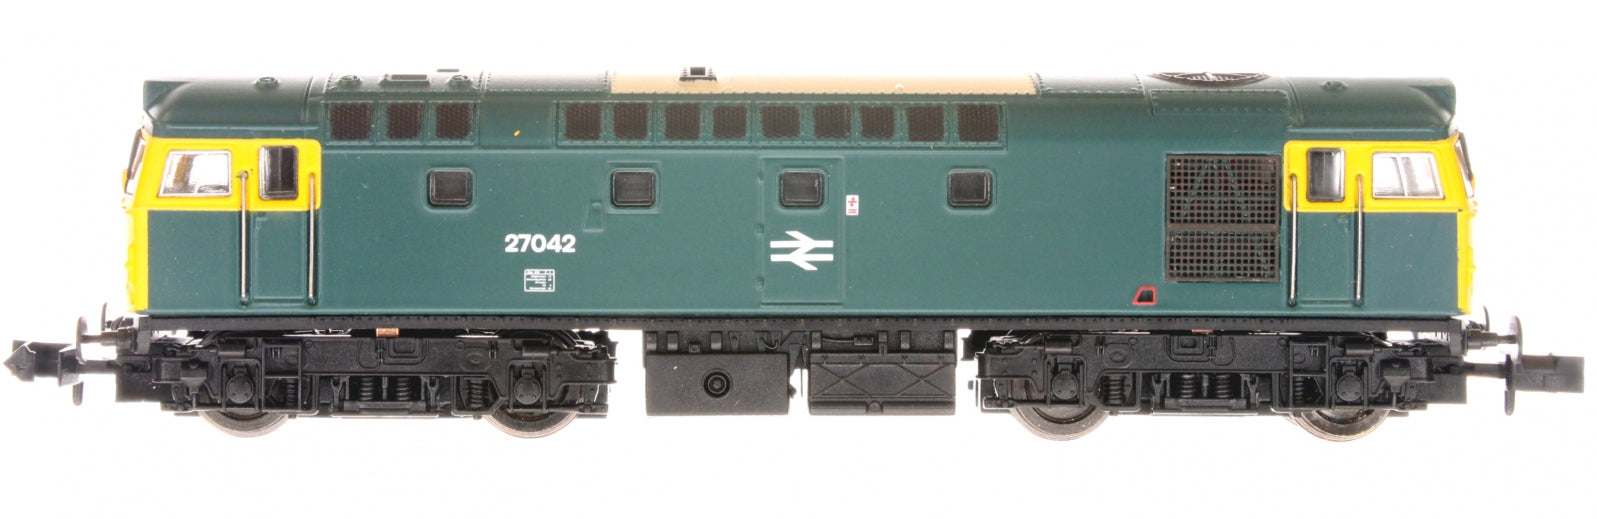 2D-013-005D N Gauge Class 27 27042 BR Blue FYE DCC Fitted